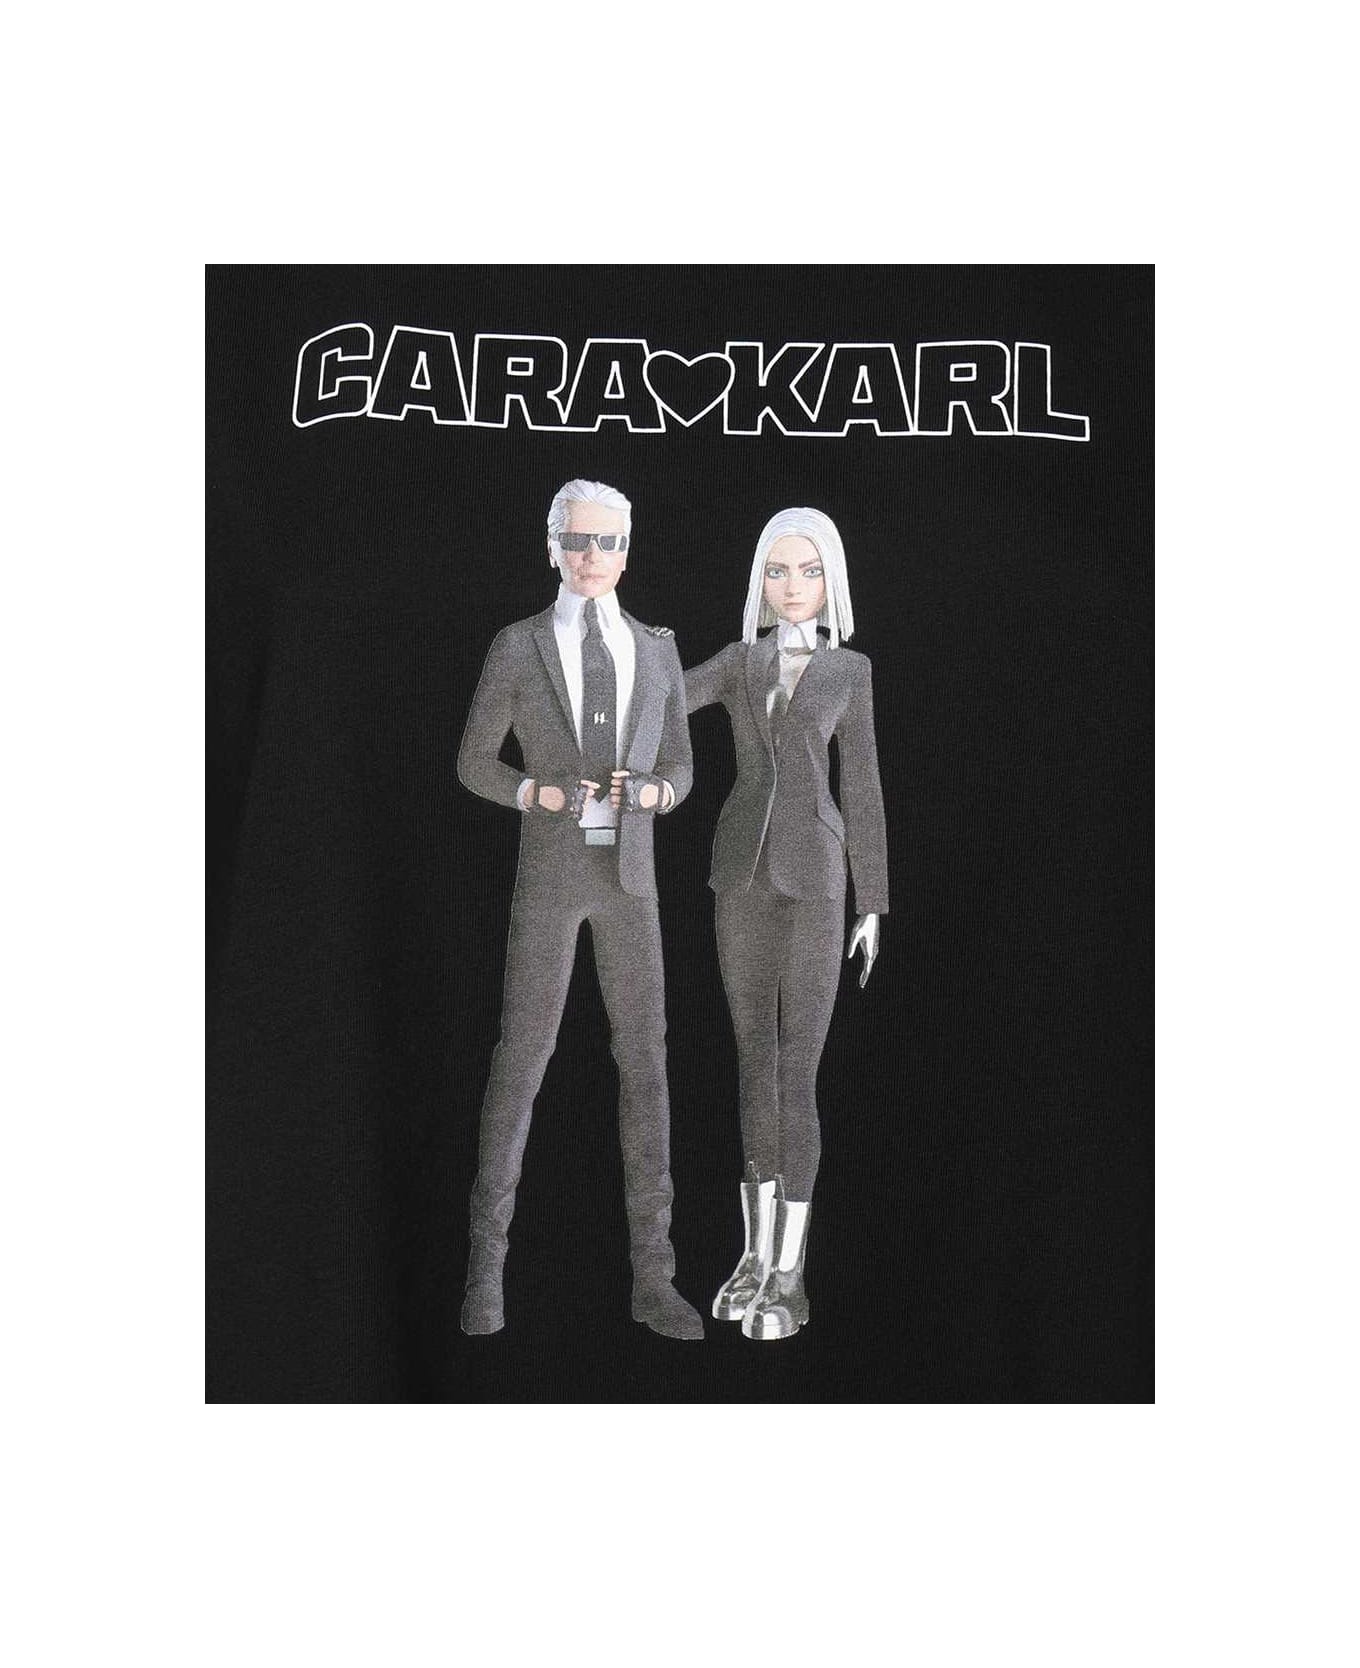 Karl Lagerfeld Printed Cotton T-shirt - black Tシャツ